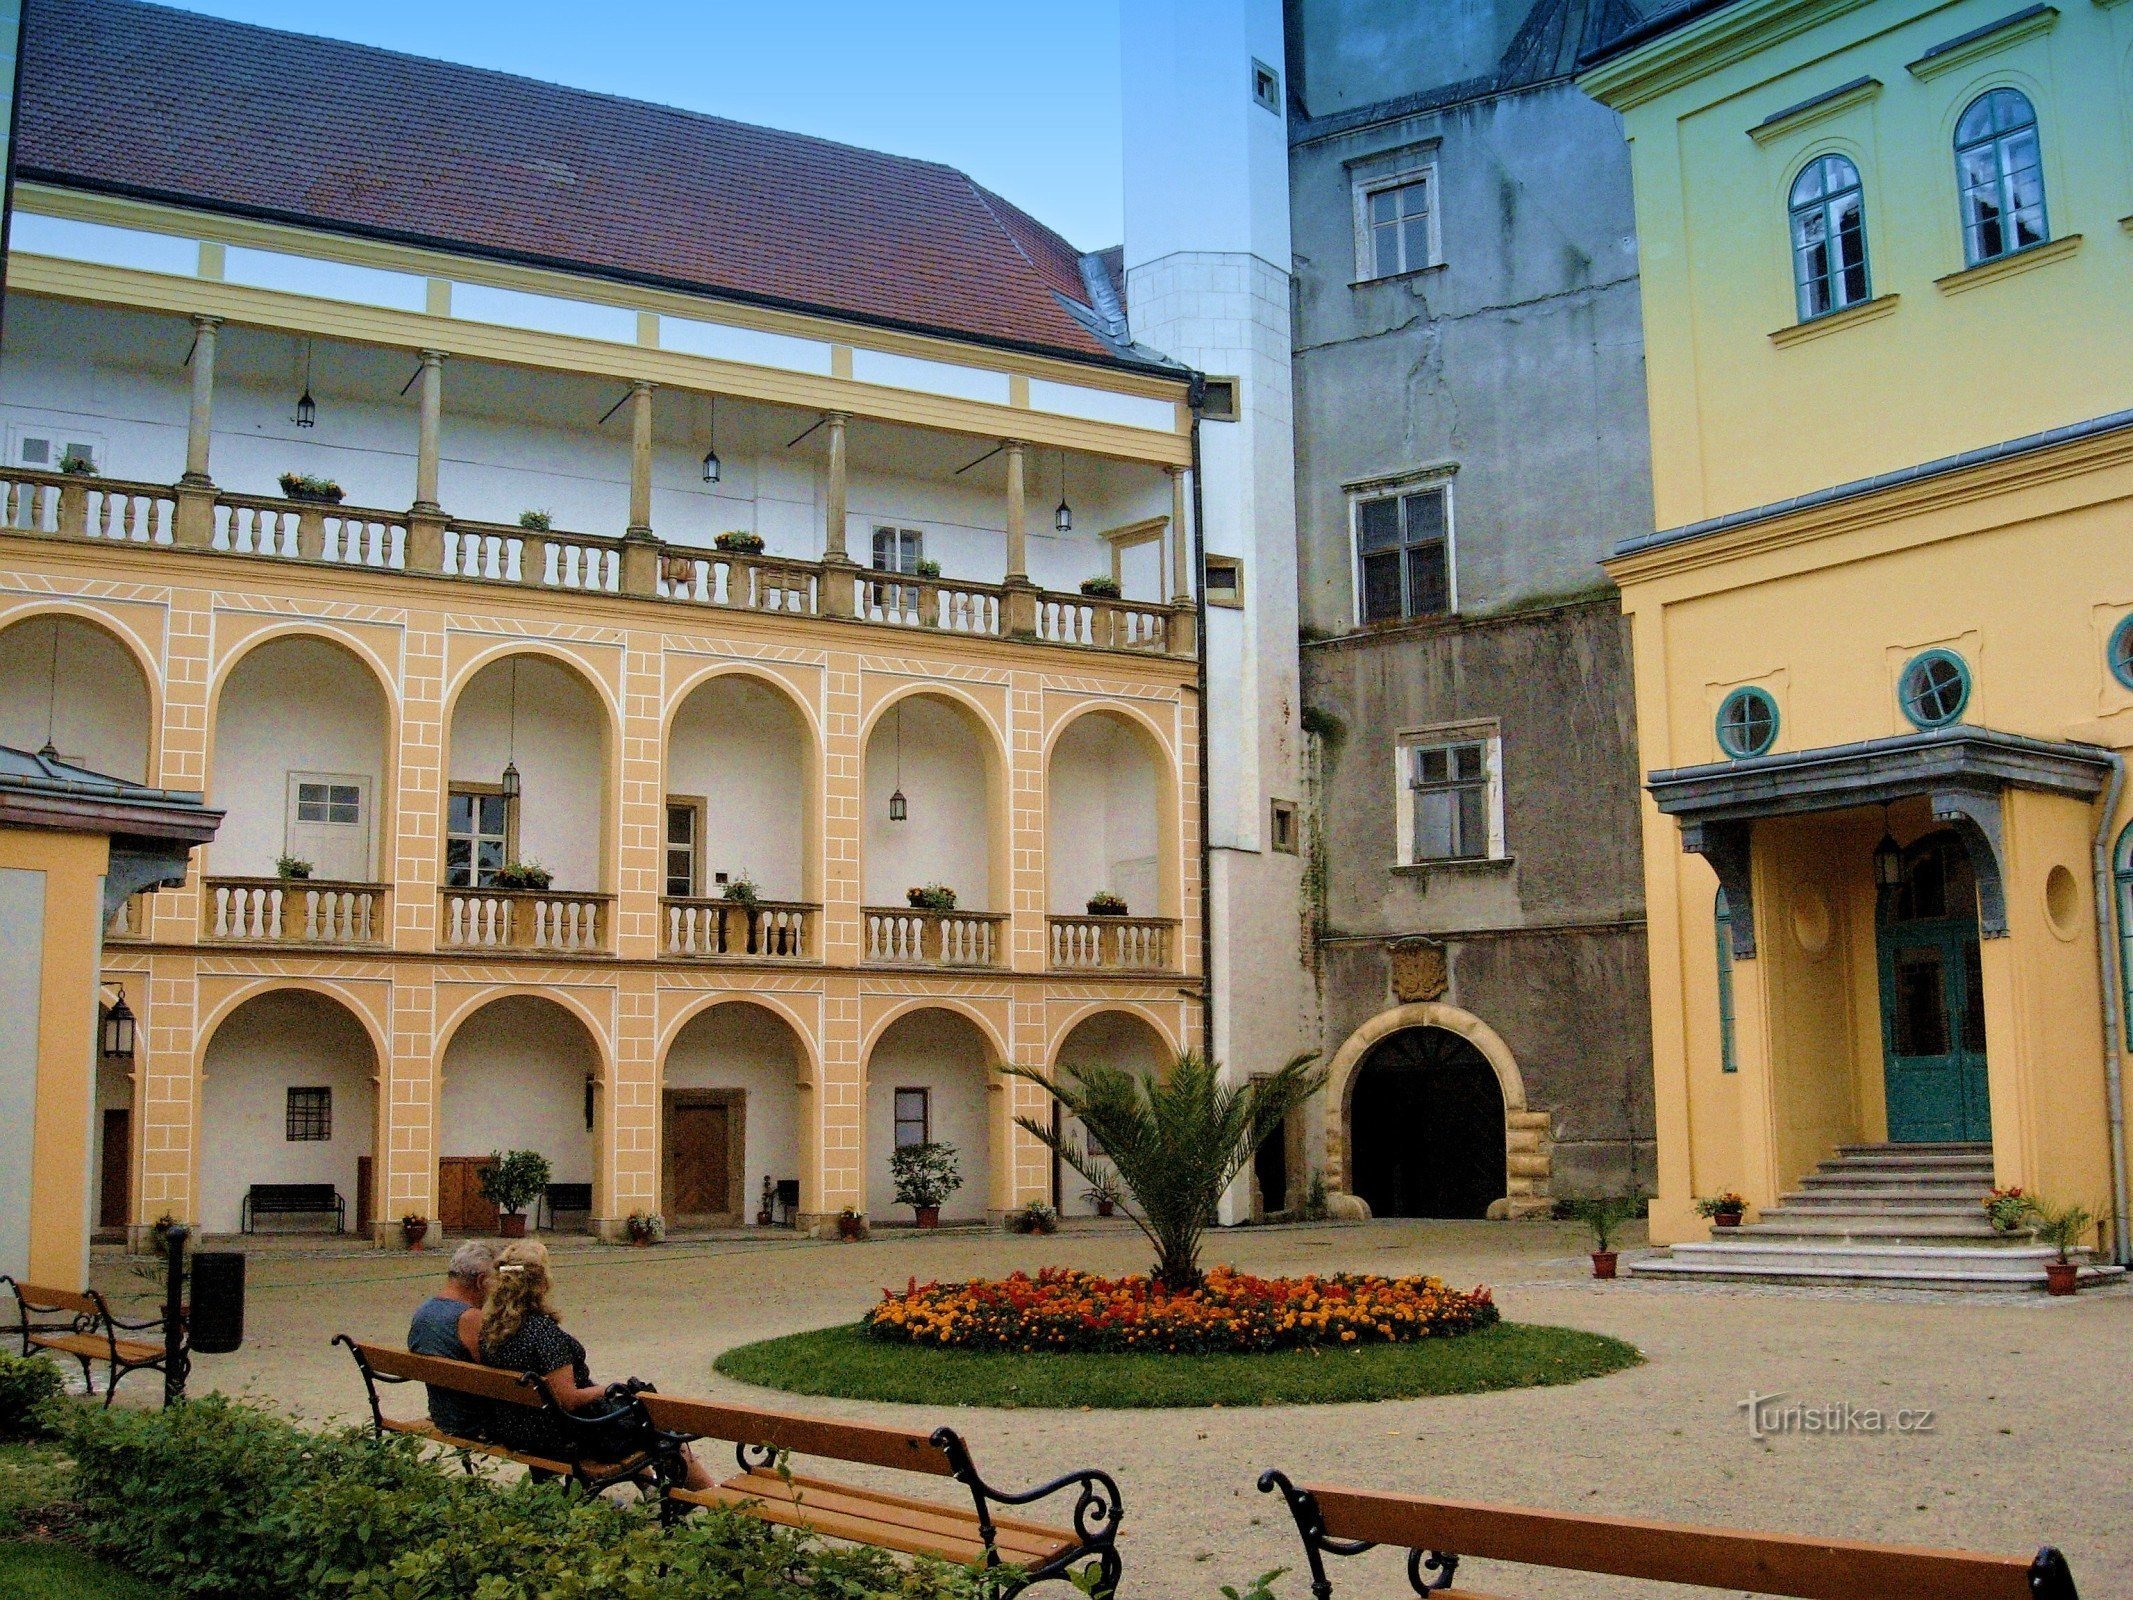 Pentru o experiență la castelul din Tovačov